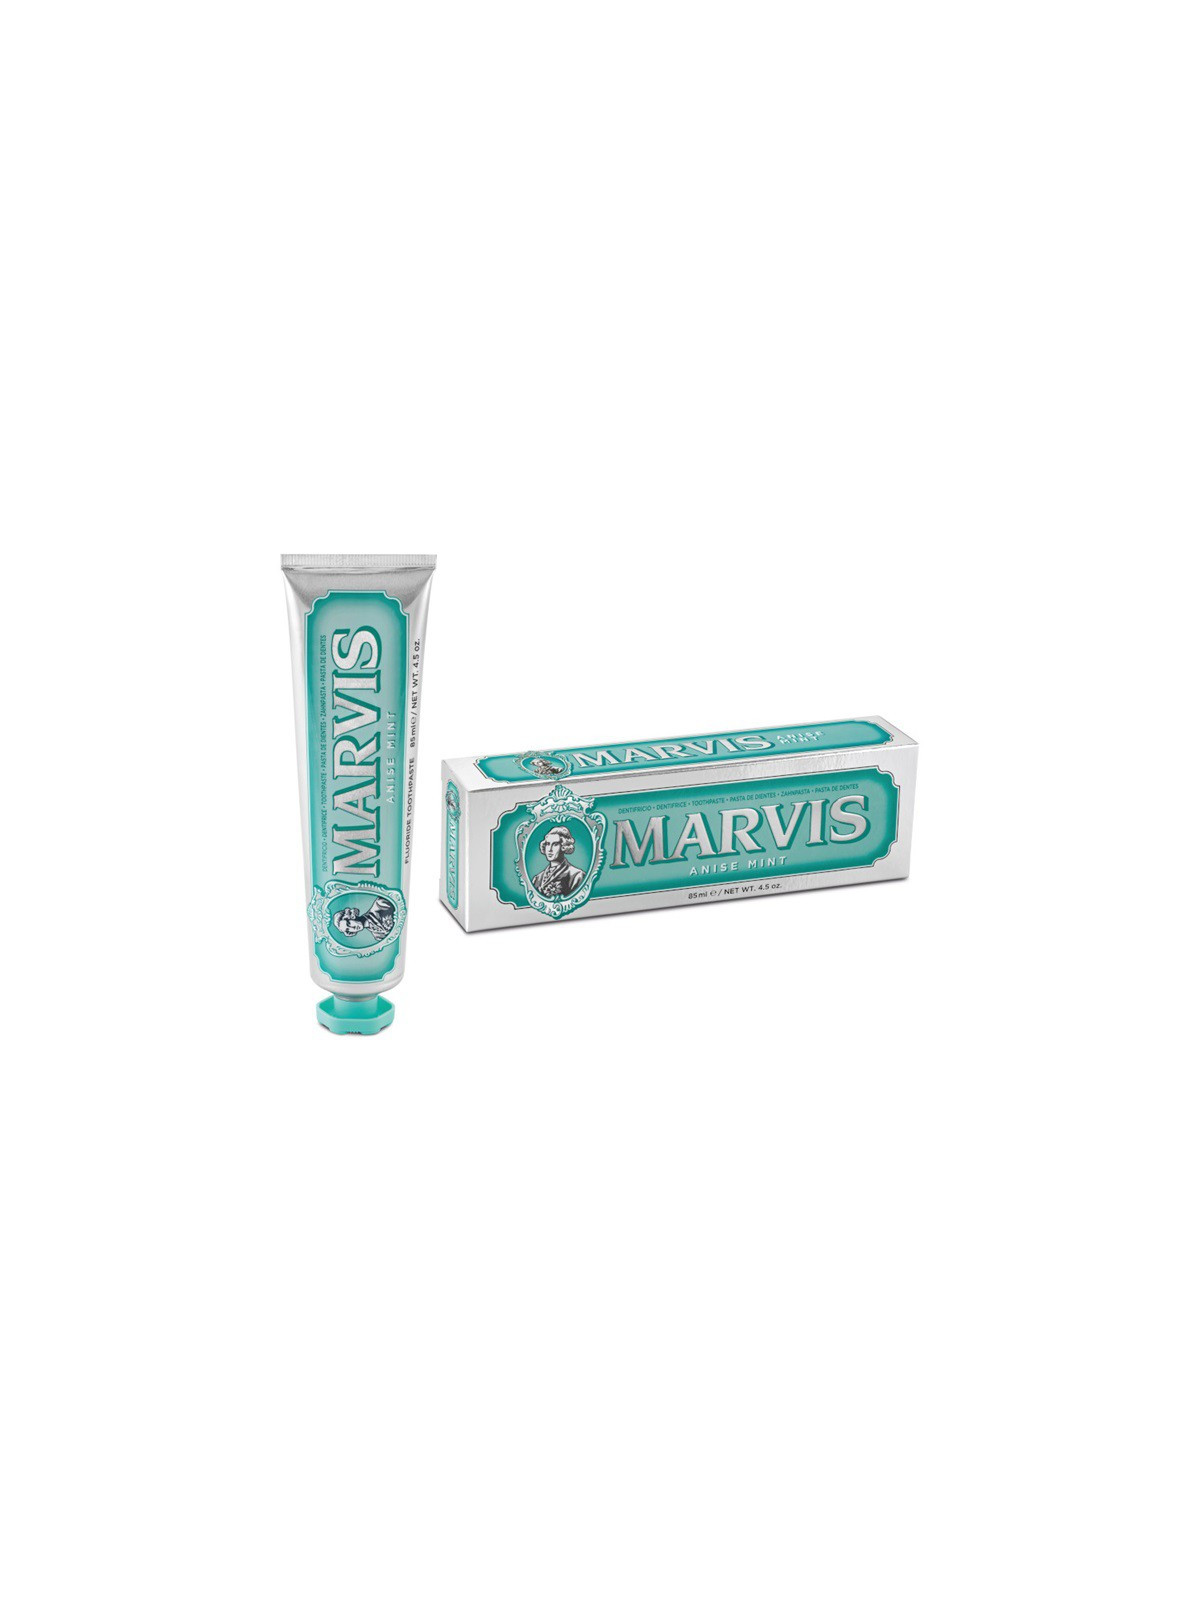 MARVIS Anyžių ir mėtų skonio dantų pasta Anise Mint Fluoride Toothpaste